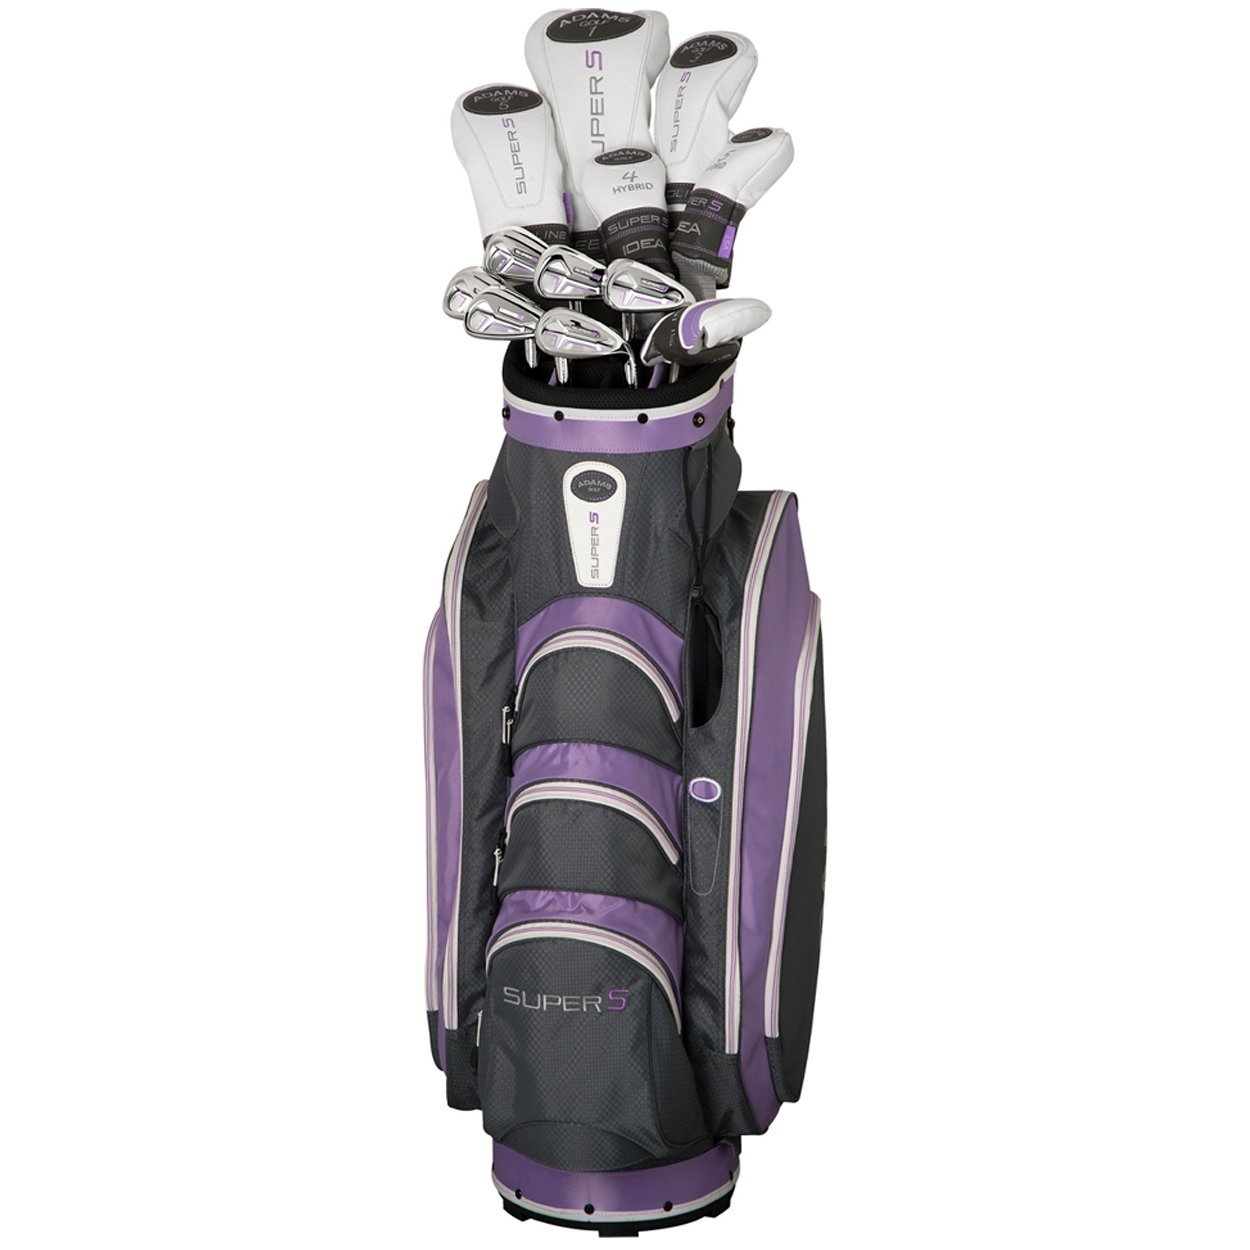 Womens Adams Lavender Speedline Super S Complete Golf Club Sets